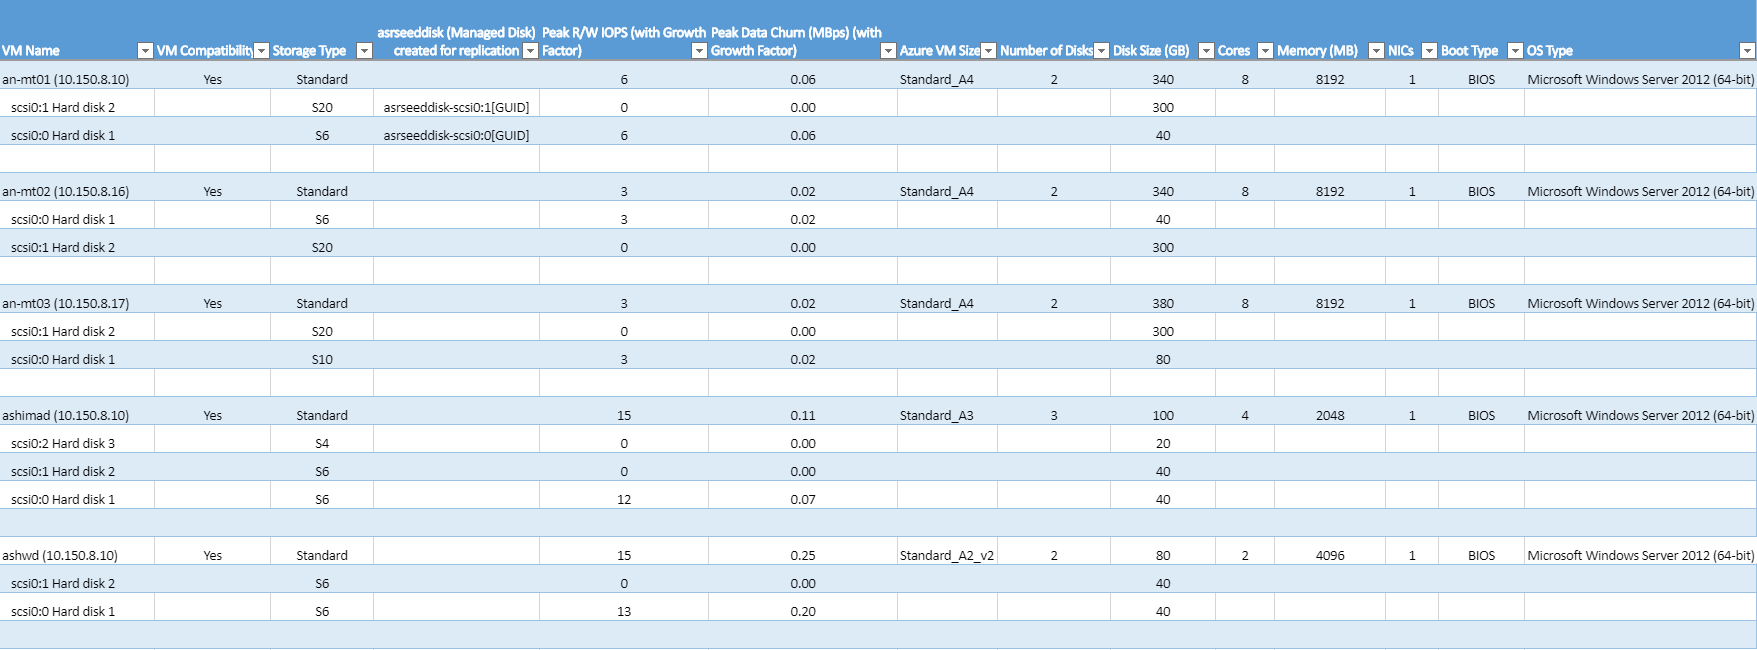 Folha de cálculo do Excel de VMs compatíveis